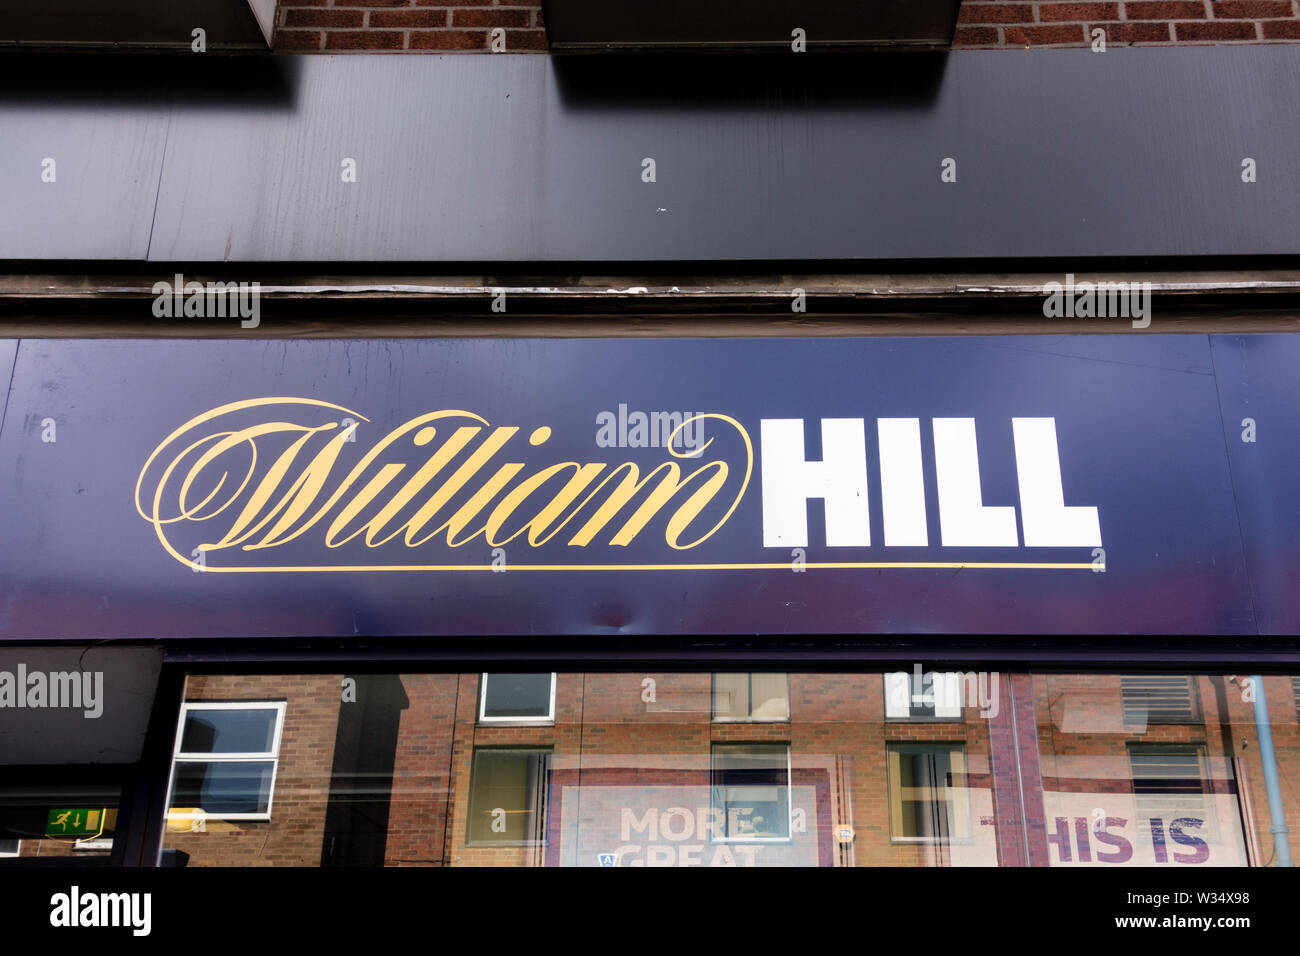 William Hill betting shop, Stourbridge, West Midlands, UK Stock Photo